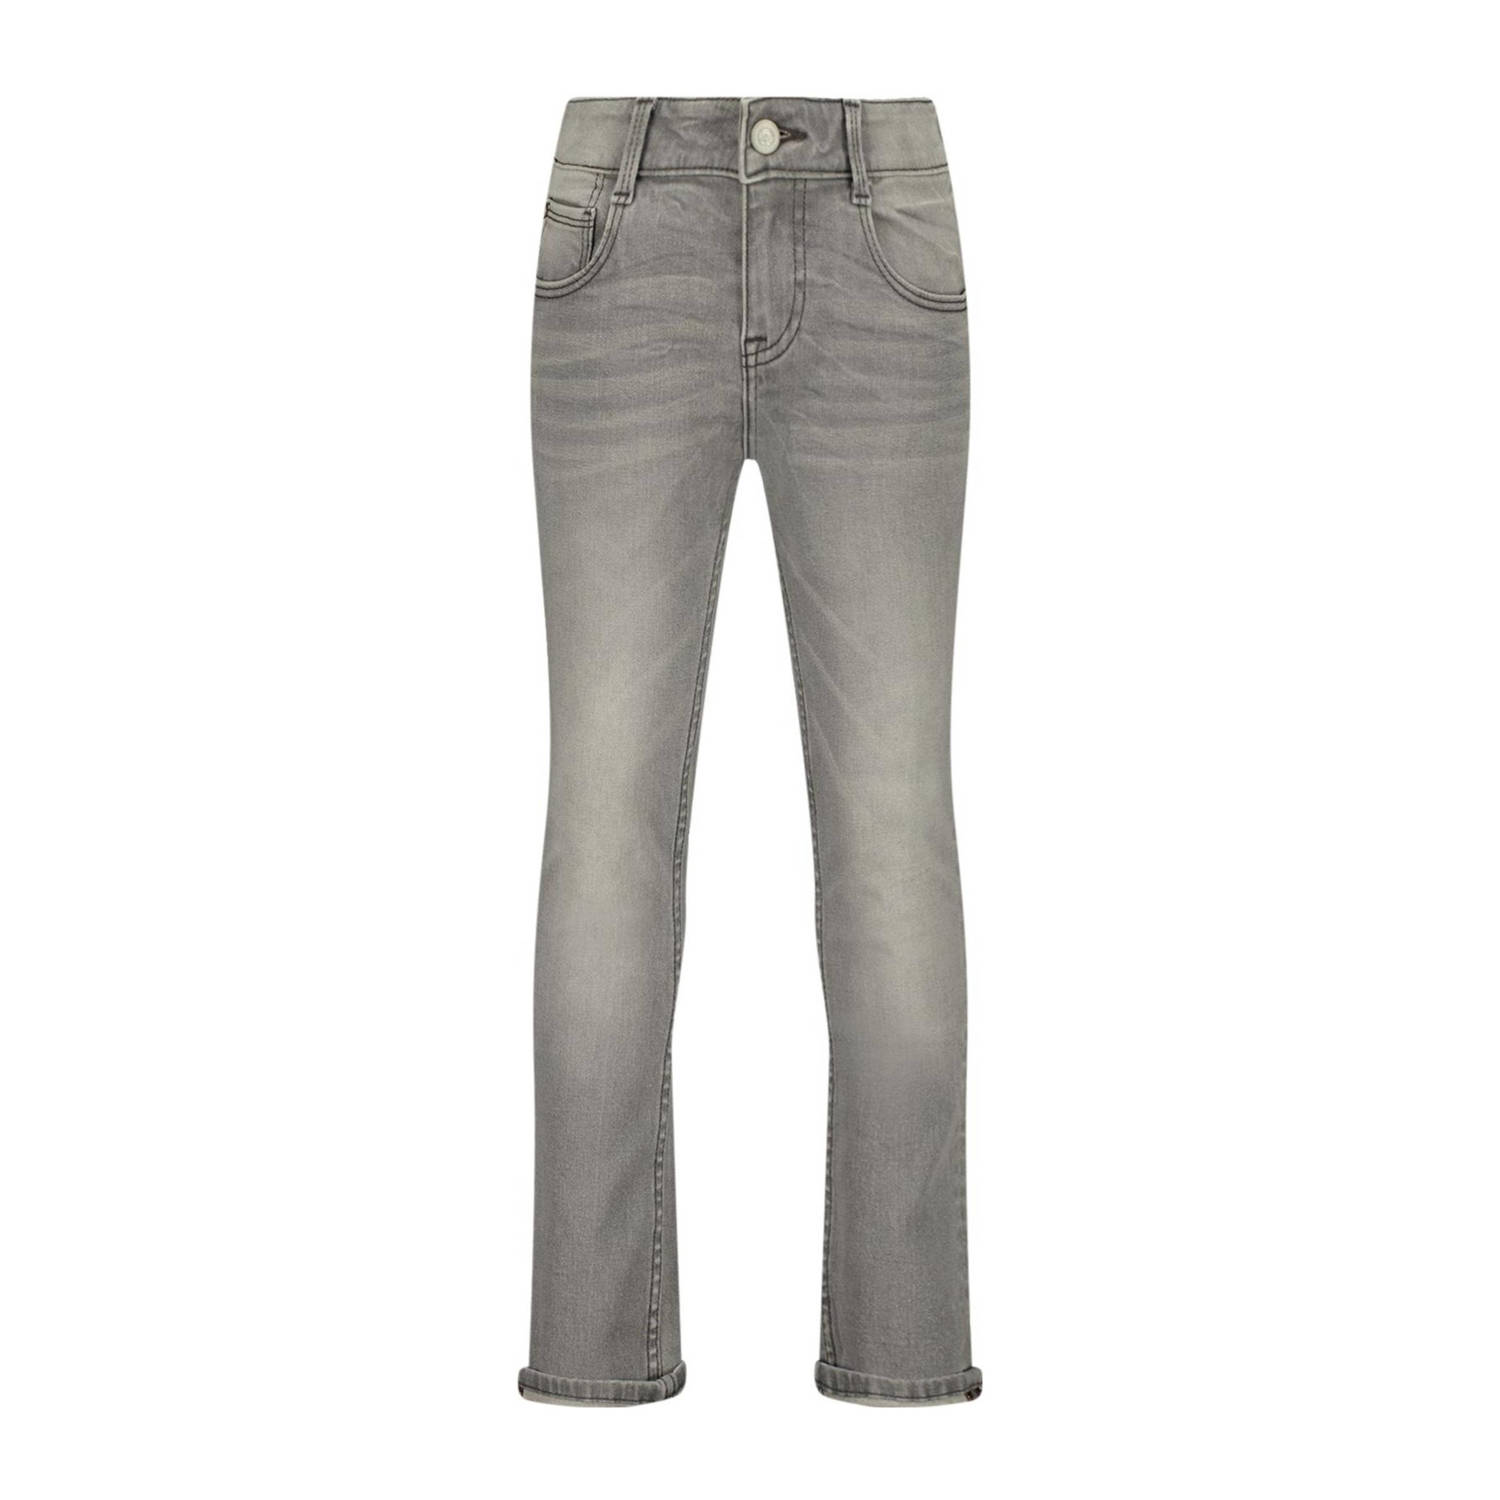 Raizzed slim fit jeans Boston mid grey stone